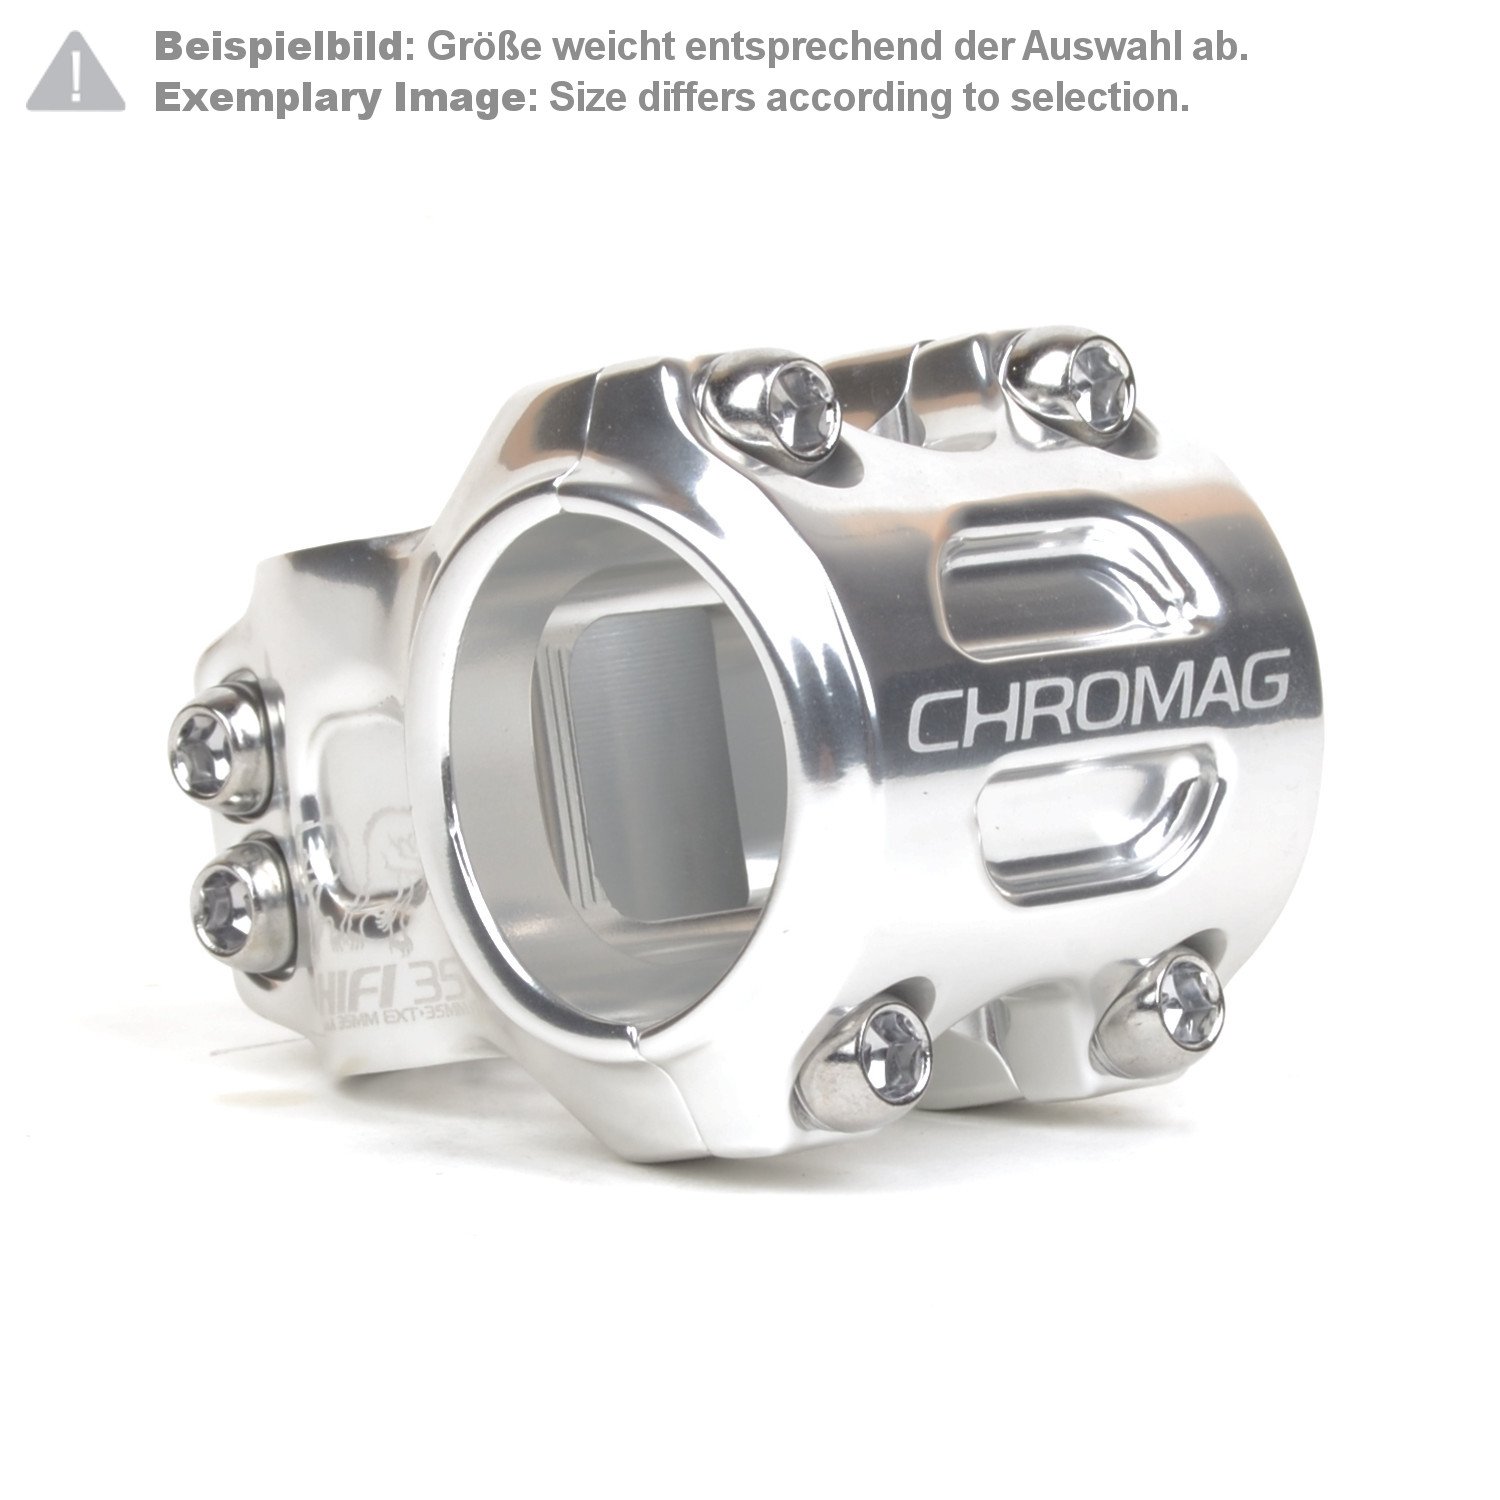 Chromag Attacco Manubrio MTB HIFI 35.0 mm, 50 mm Reach, Argento